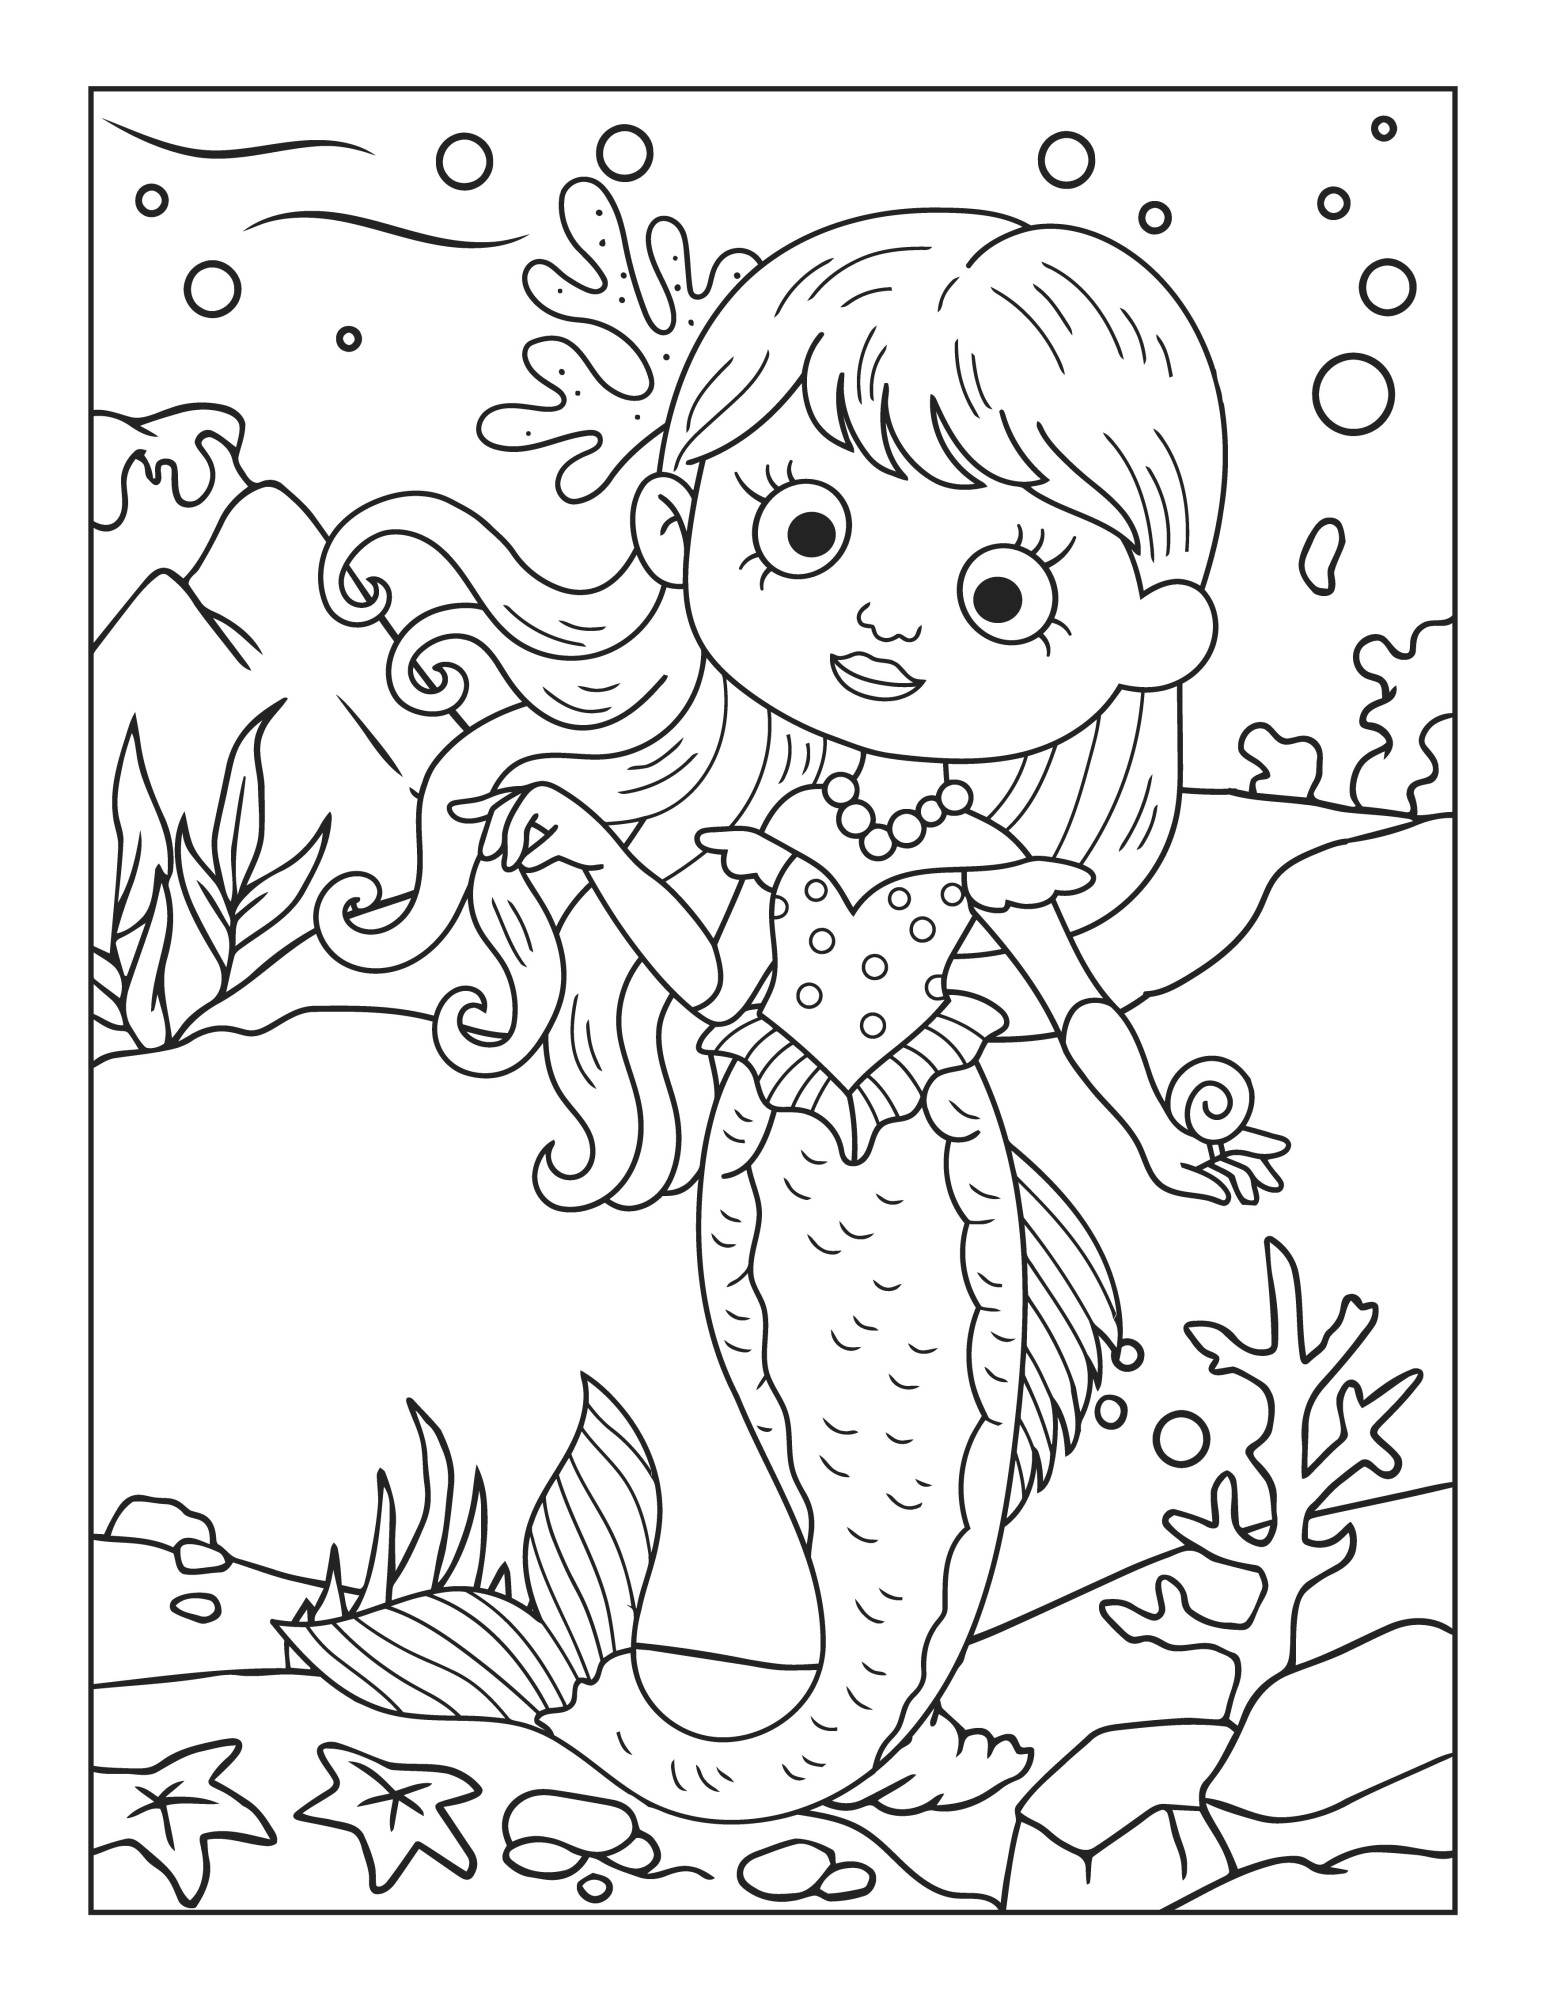 Раскраска для детей: русалка «Мир подводного счастья»